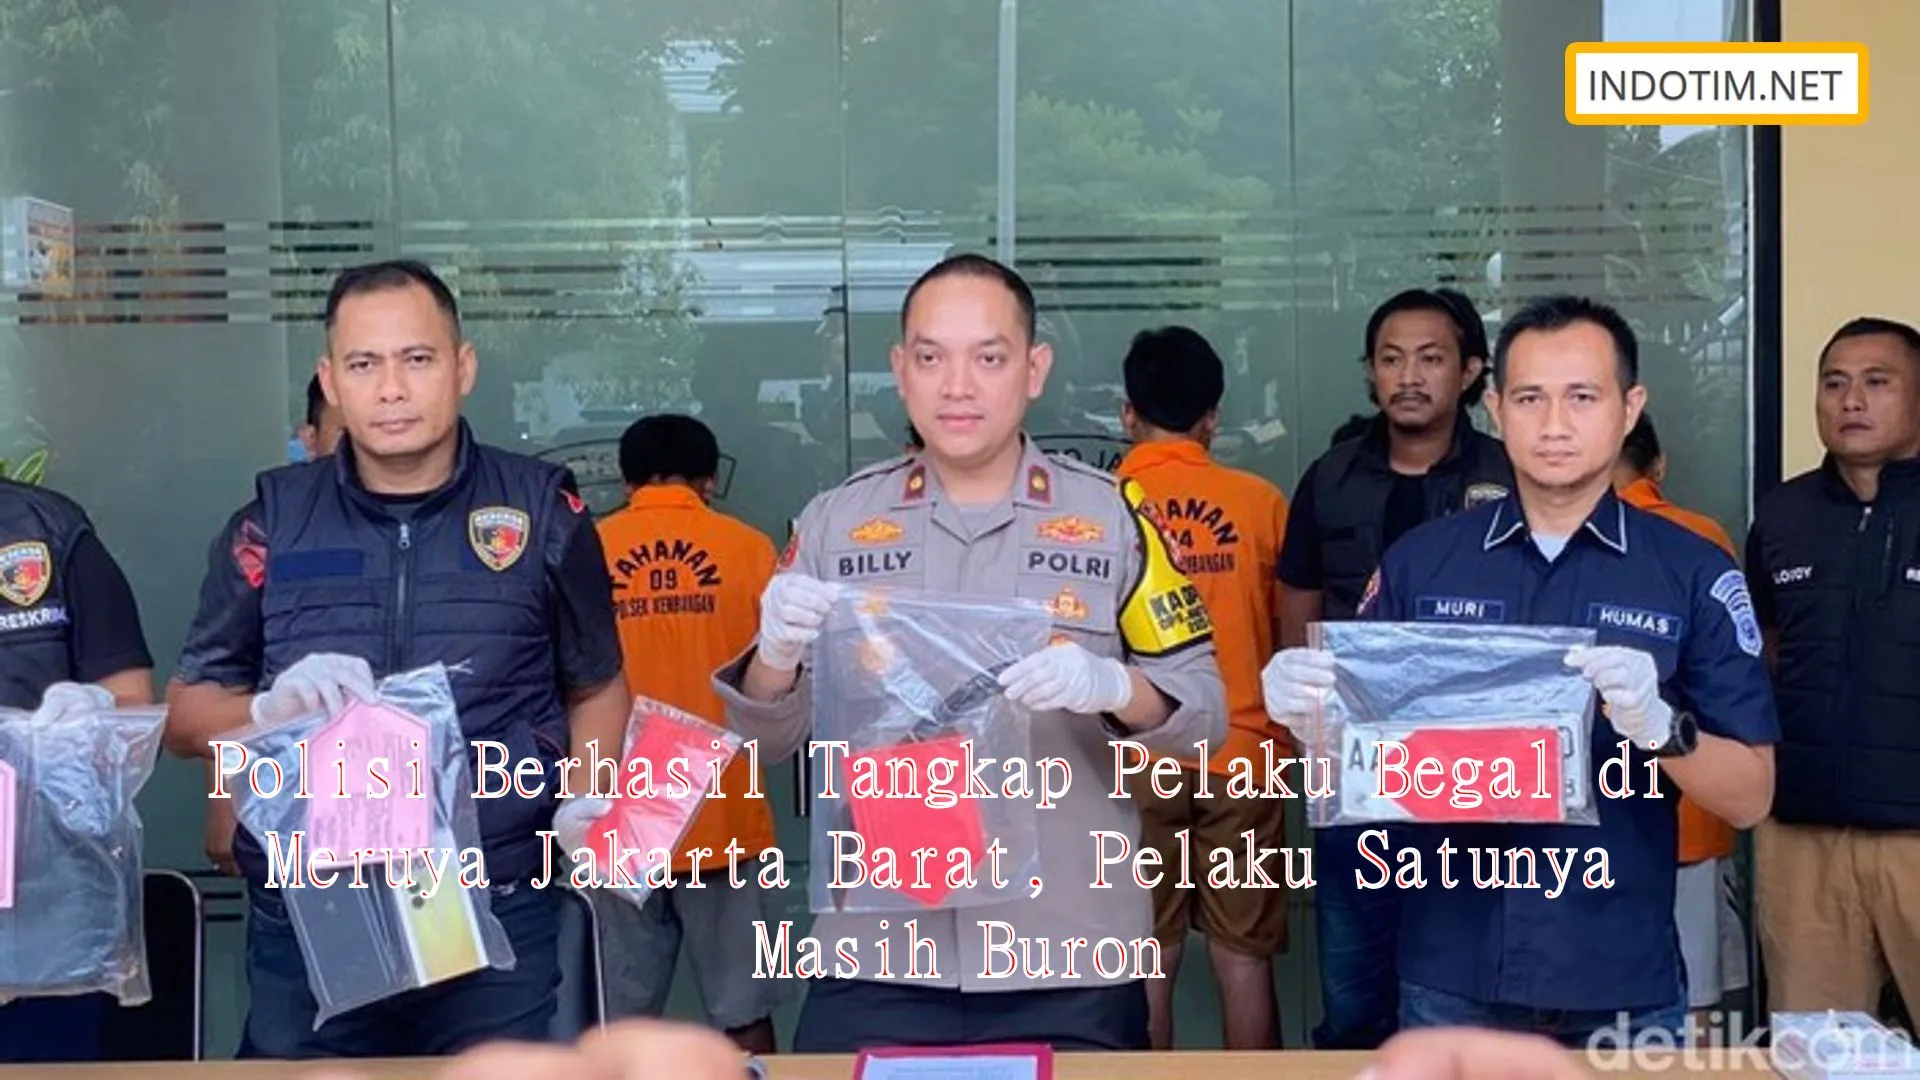 Polisi Berhasil Tangkap Pelaku Begal di Meruya Jakarta Barat, Pelaku Satunya Masih Buron